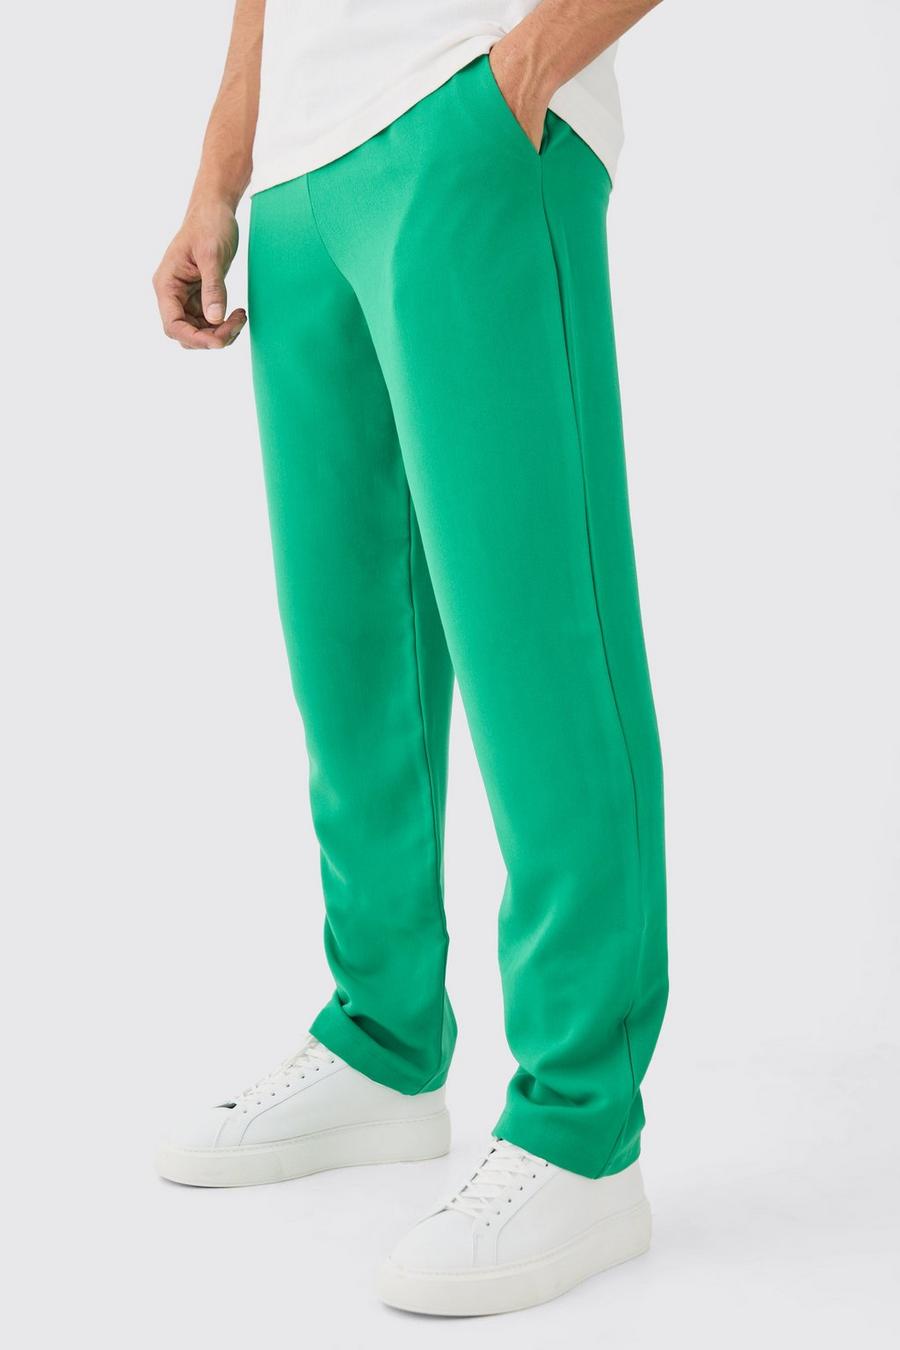 Emerald Zwangerschap Pyjama Set Met 'Squeeze The Day' Hemd En Shorts